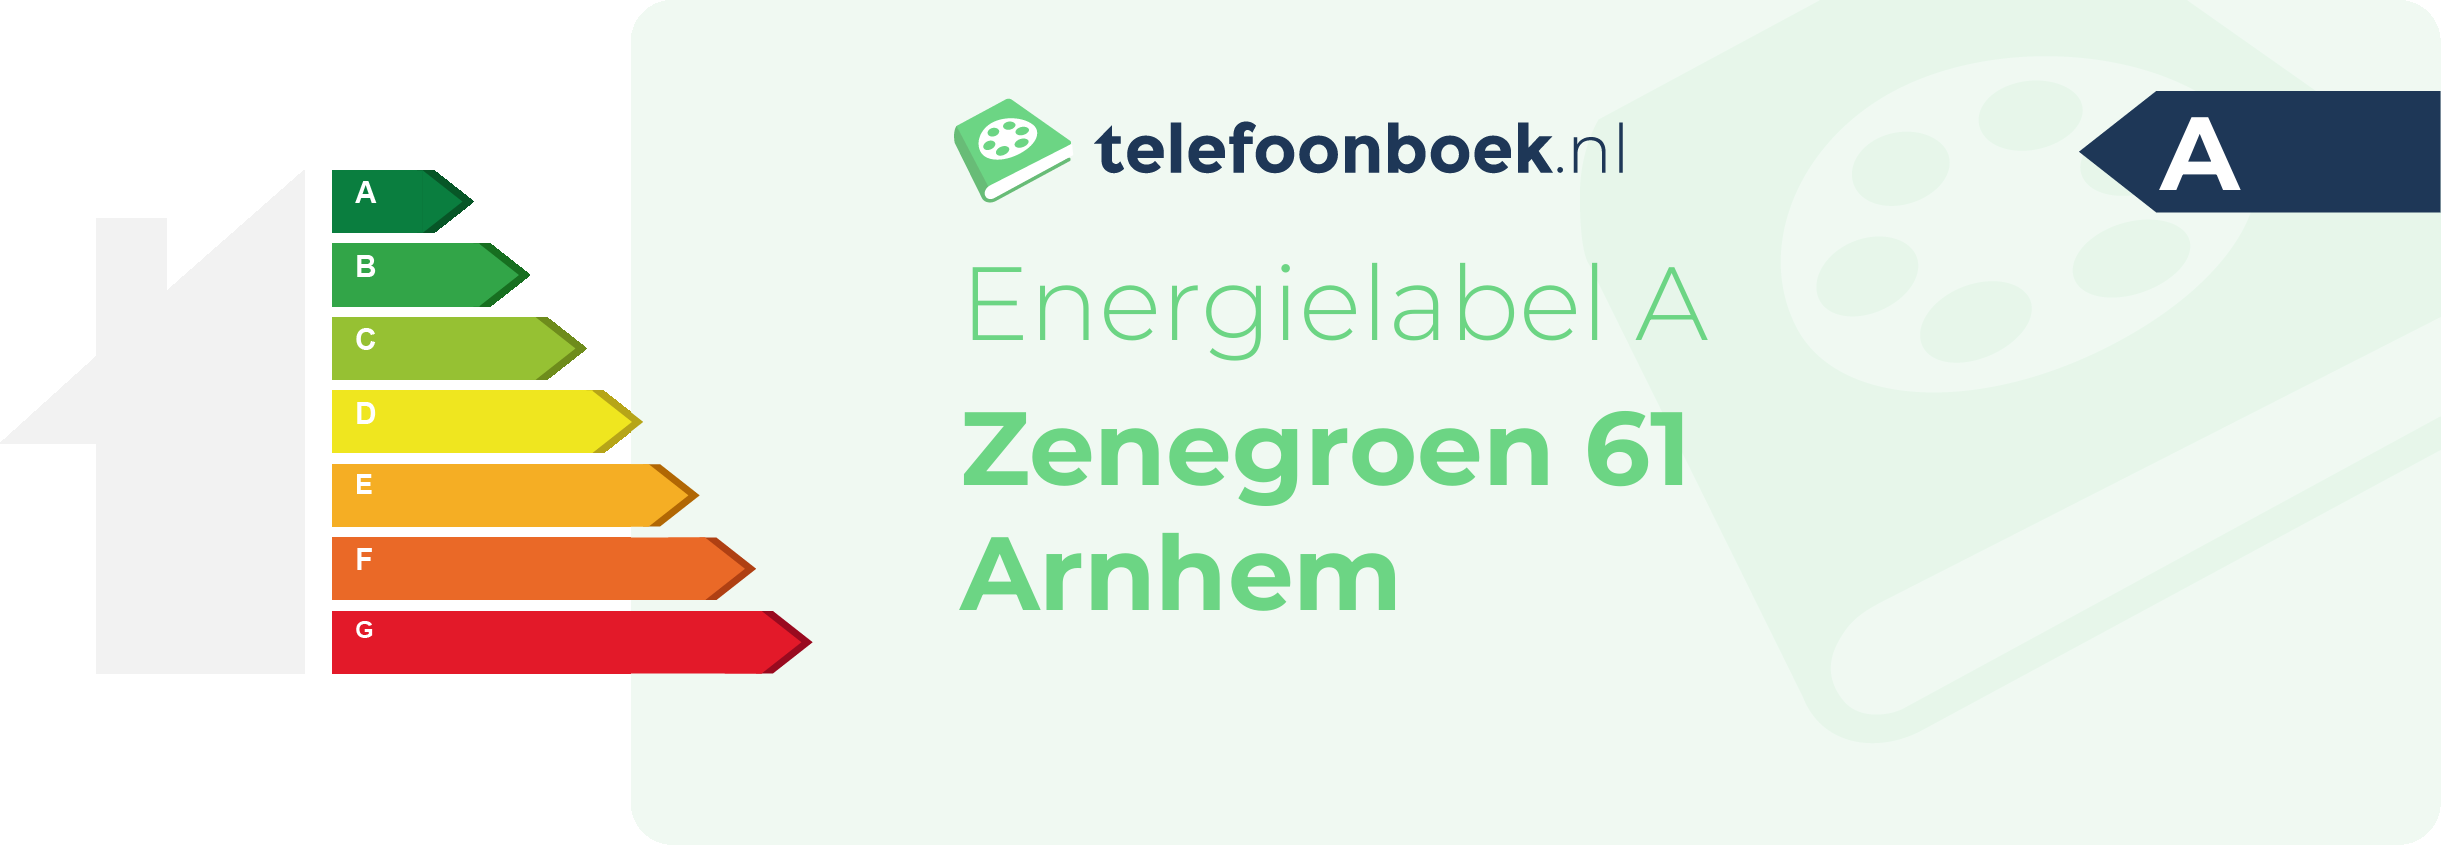 Energielabel Zenegroen 61 Arnhem